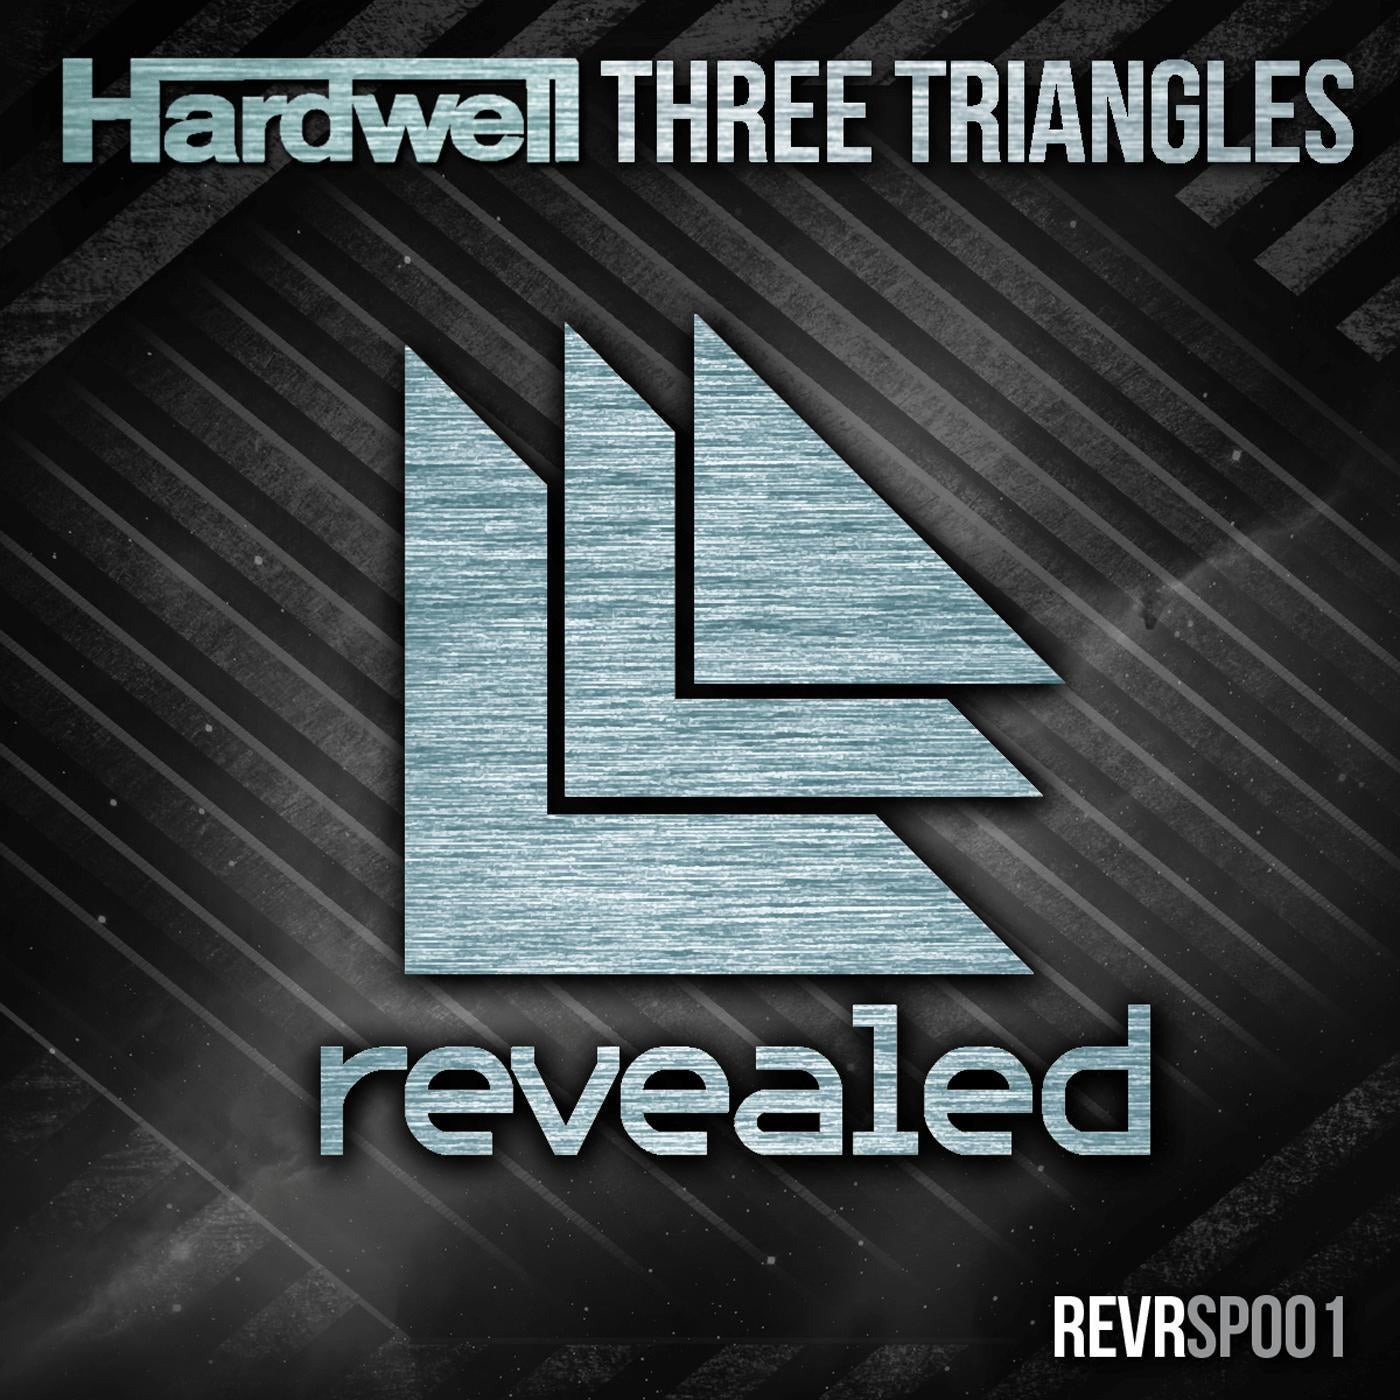 Three Triangles - Club Mix